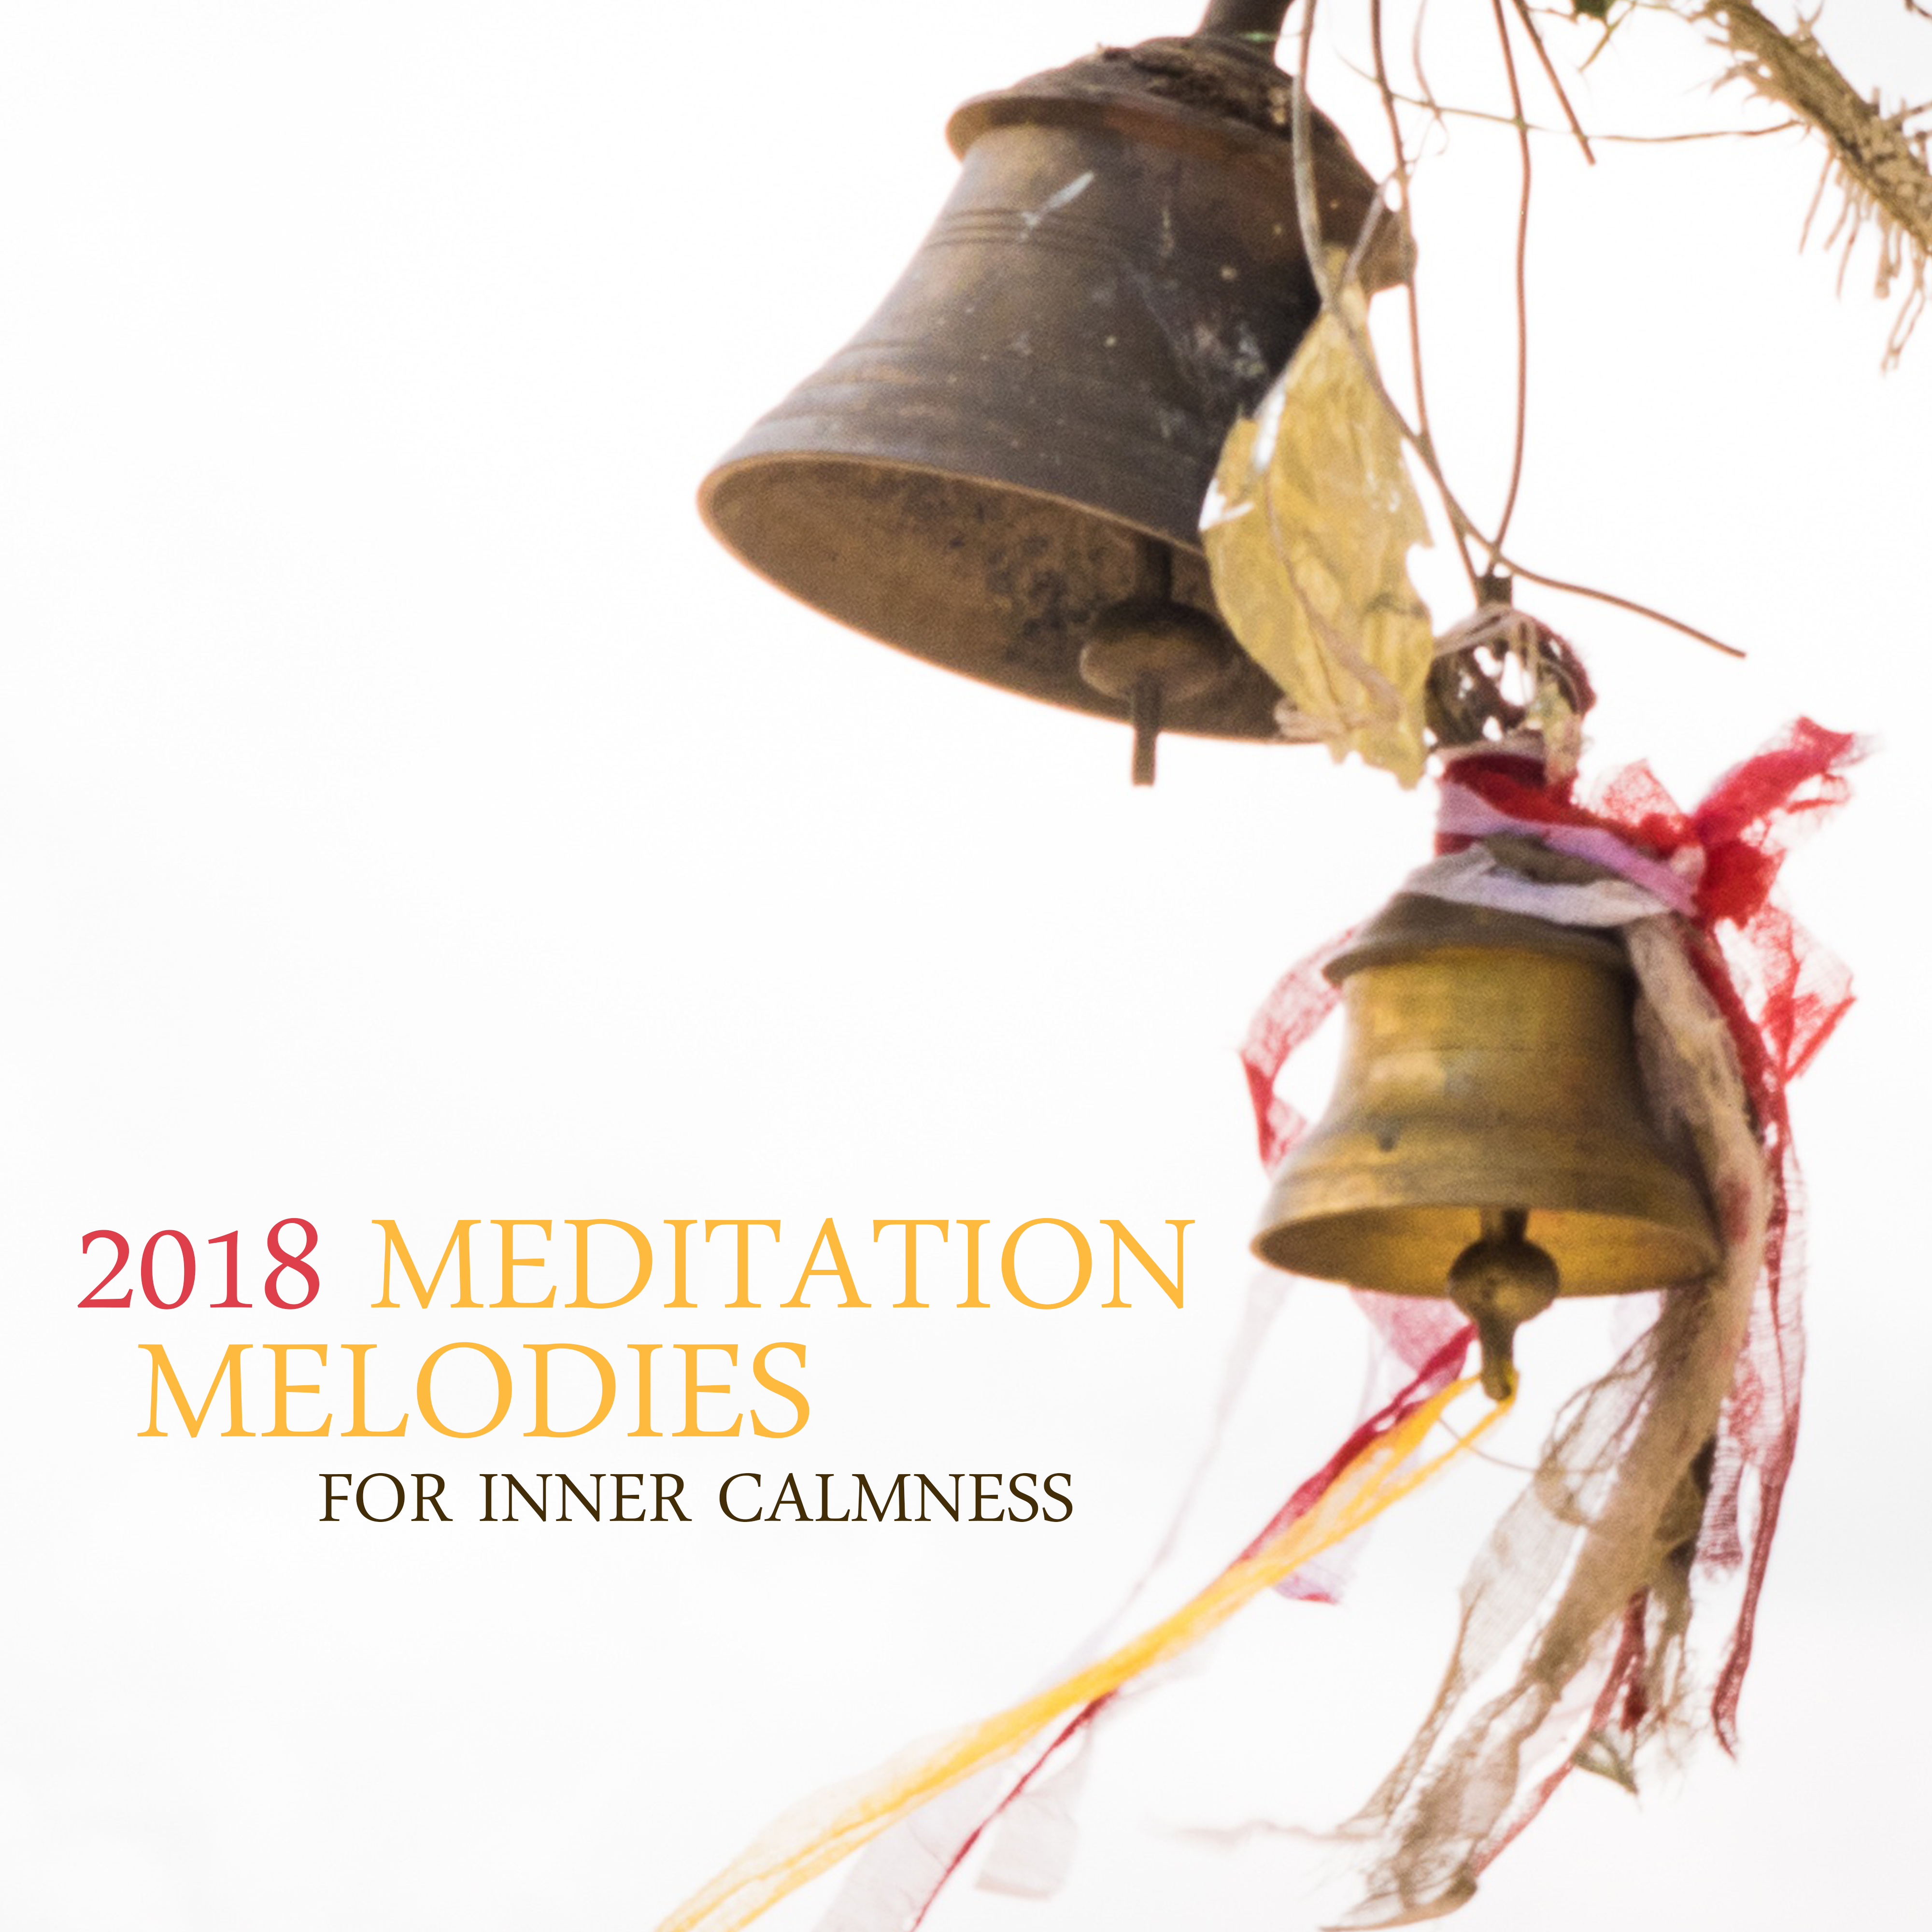 2018 Meditation Melodies for Inner Calmness